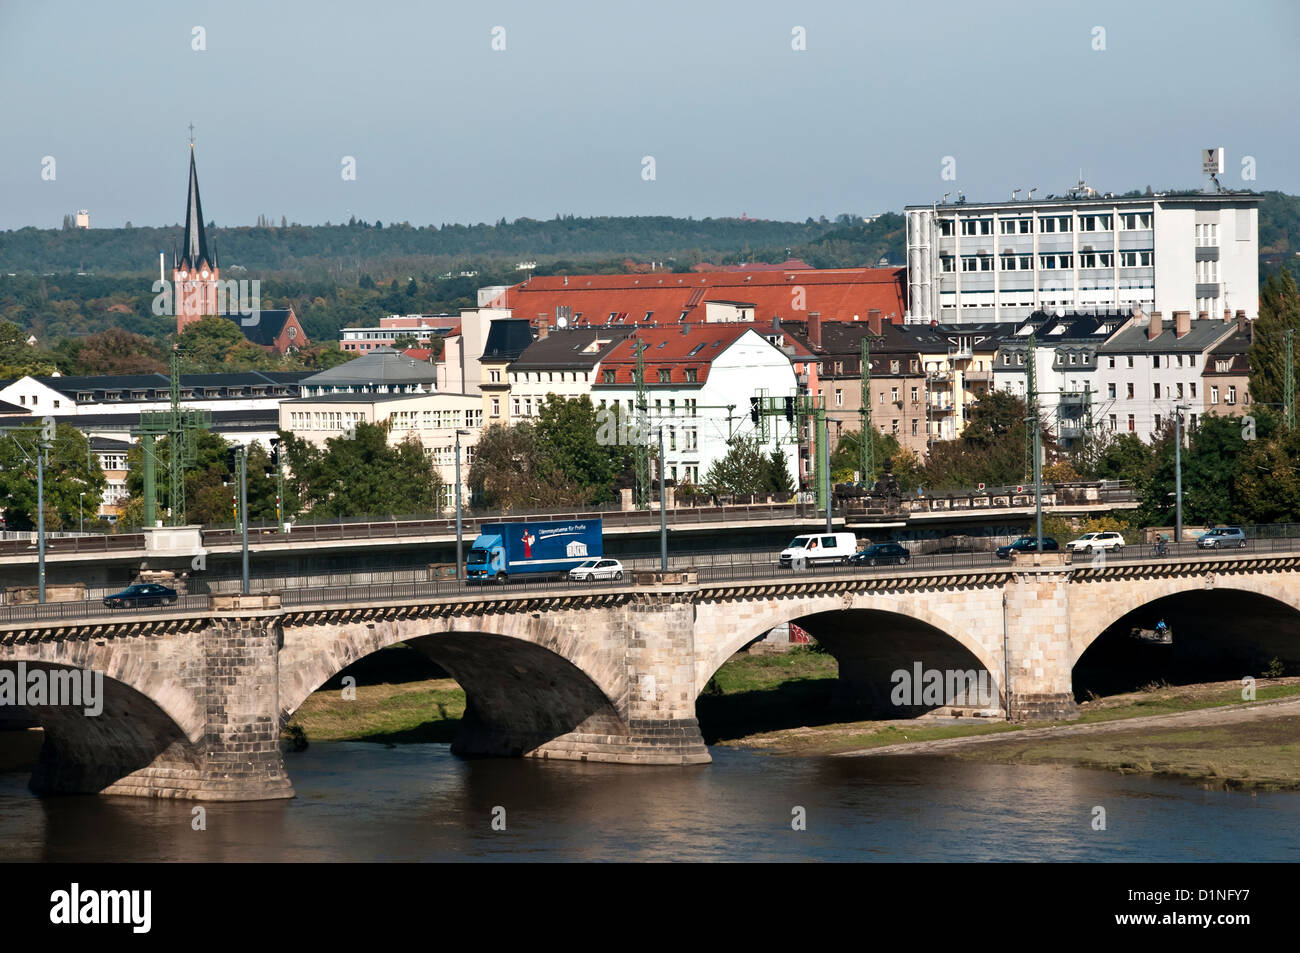 Puente Arqueado con auto el tráfico que cruza el río Elba, Dresde, Alemania Foto de stock